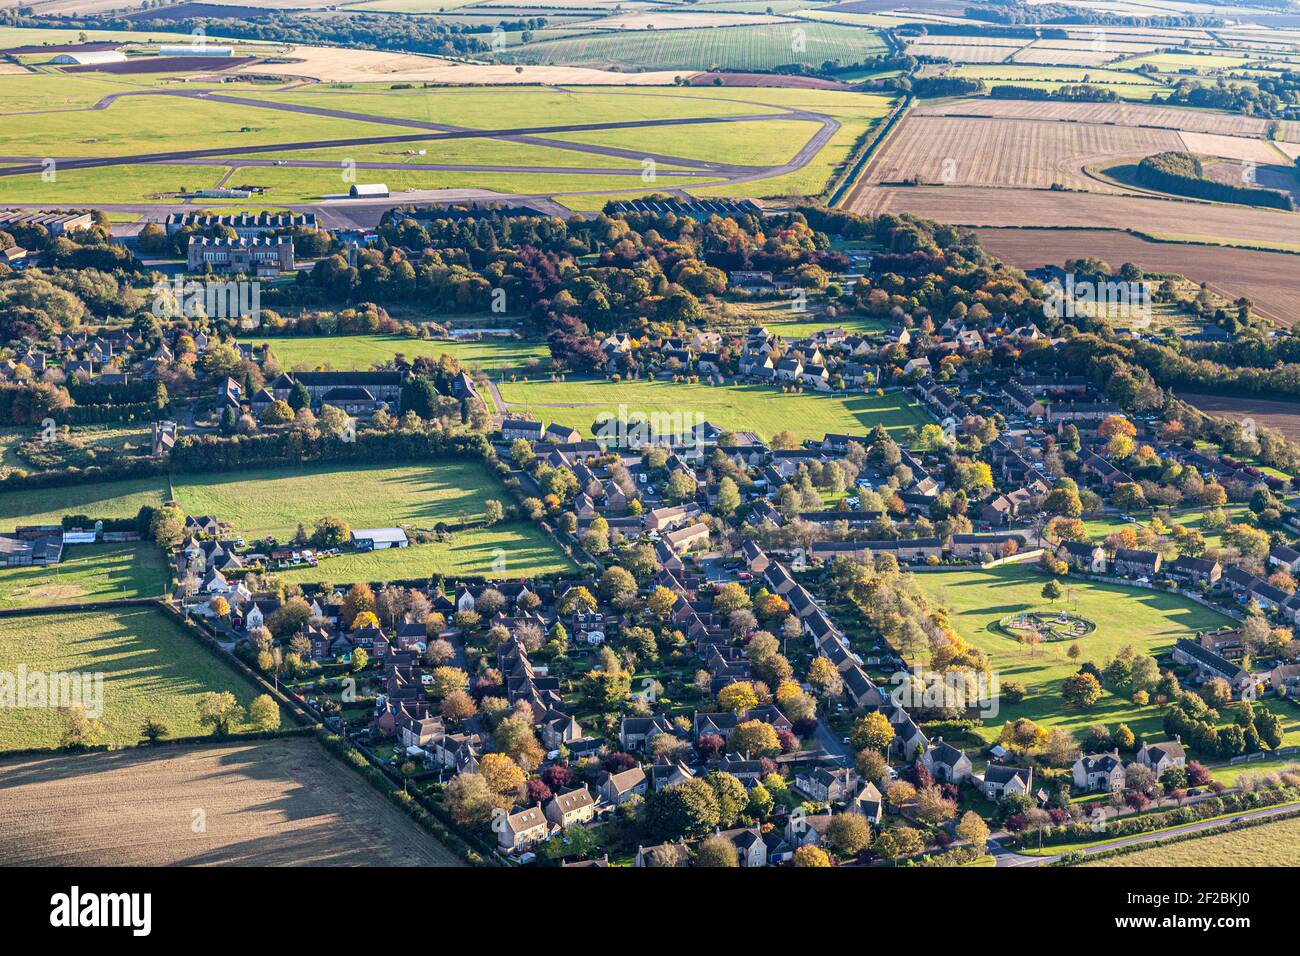 Une vue aérienne du village de Cotswold, à Upper Rissington, Gloucestershire, Royaume-Uni - l'aérodrome de Little Rissington est visible en arrière-plan. Banque D'Images